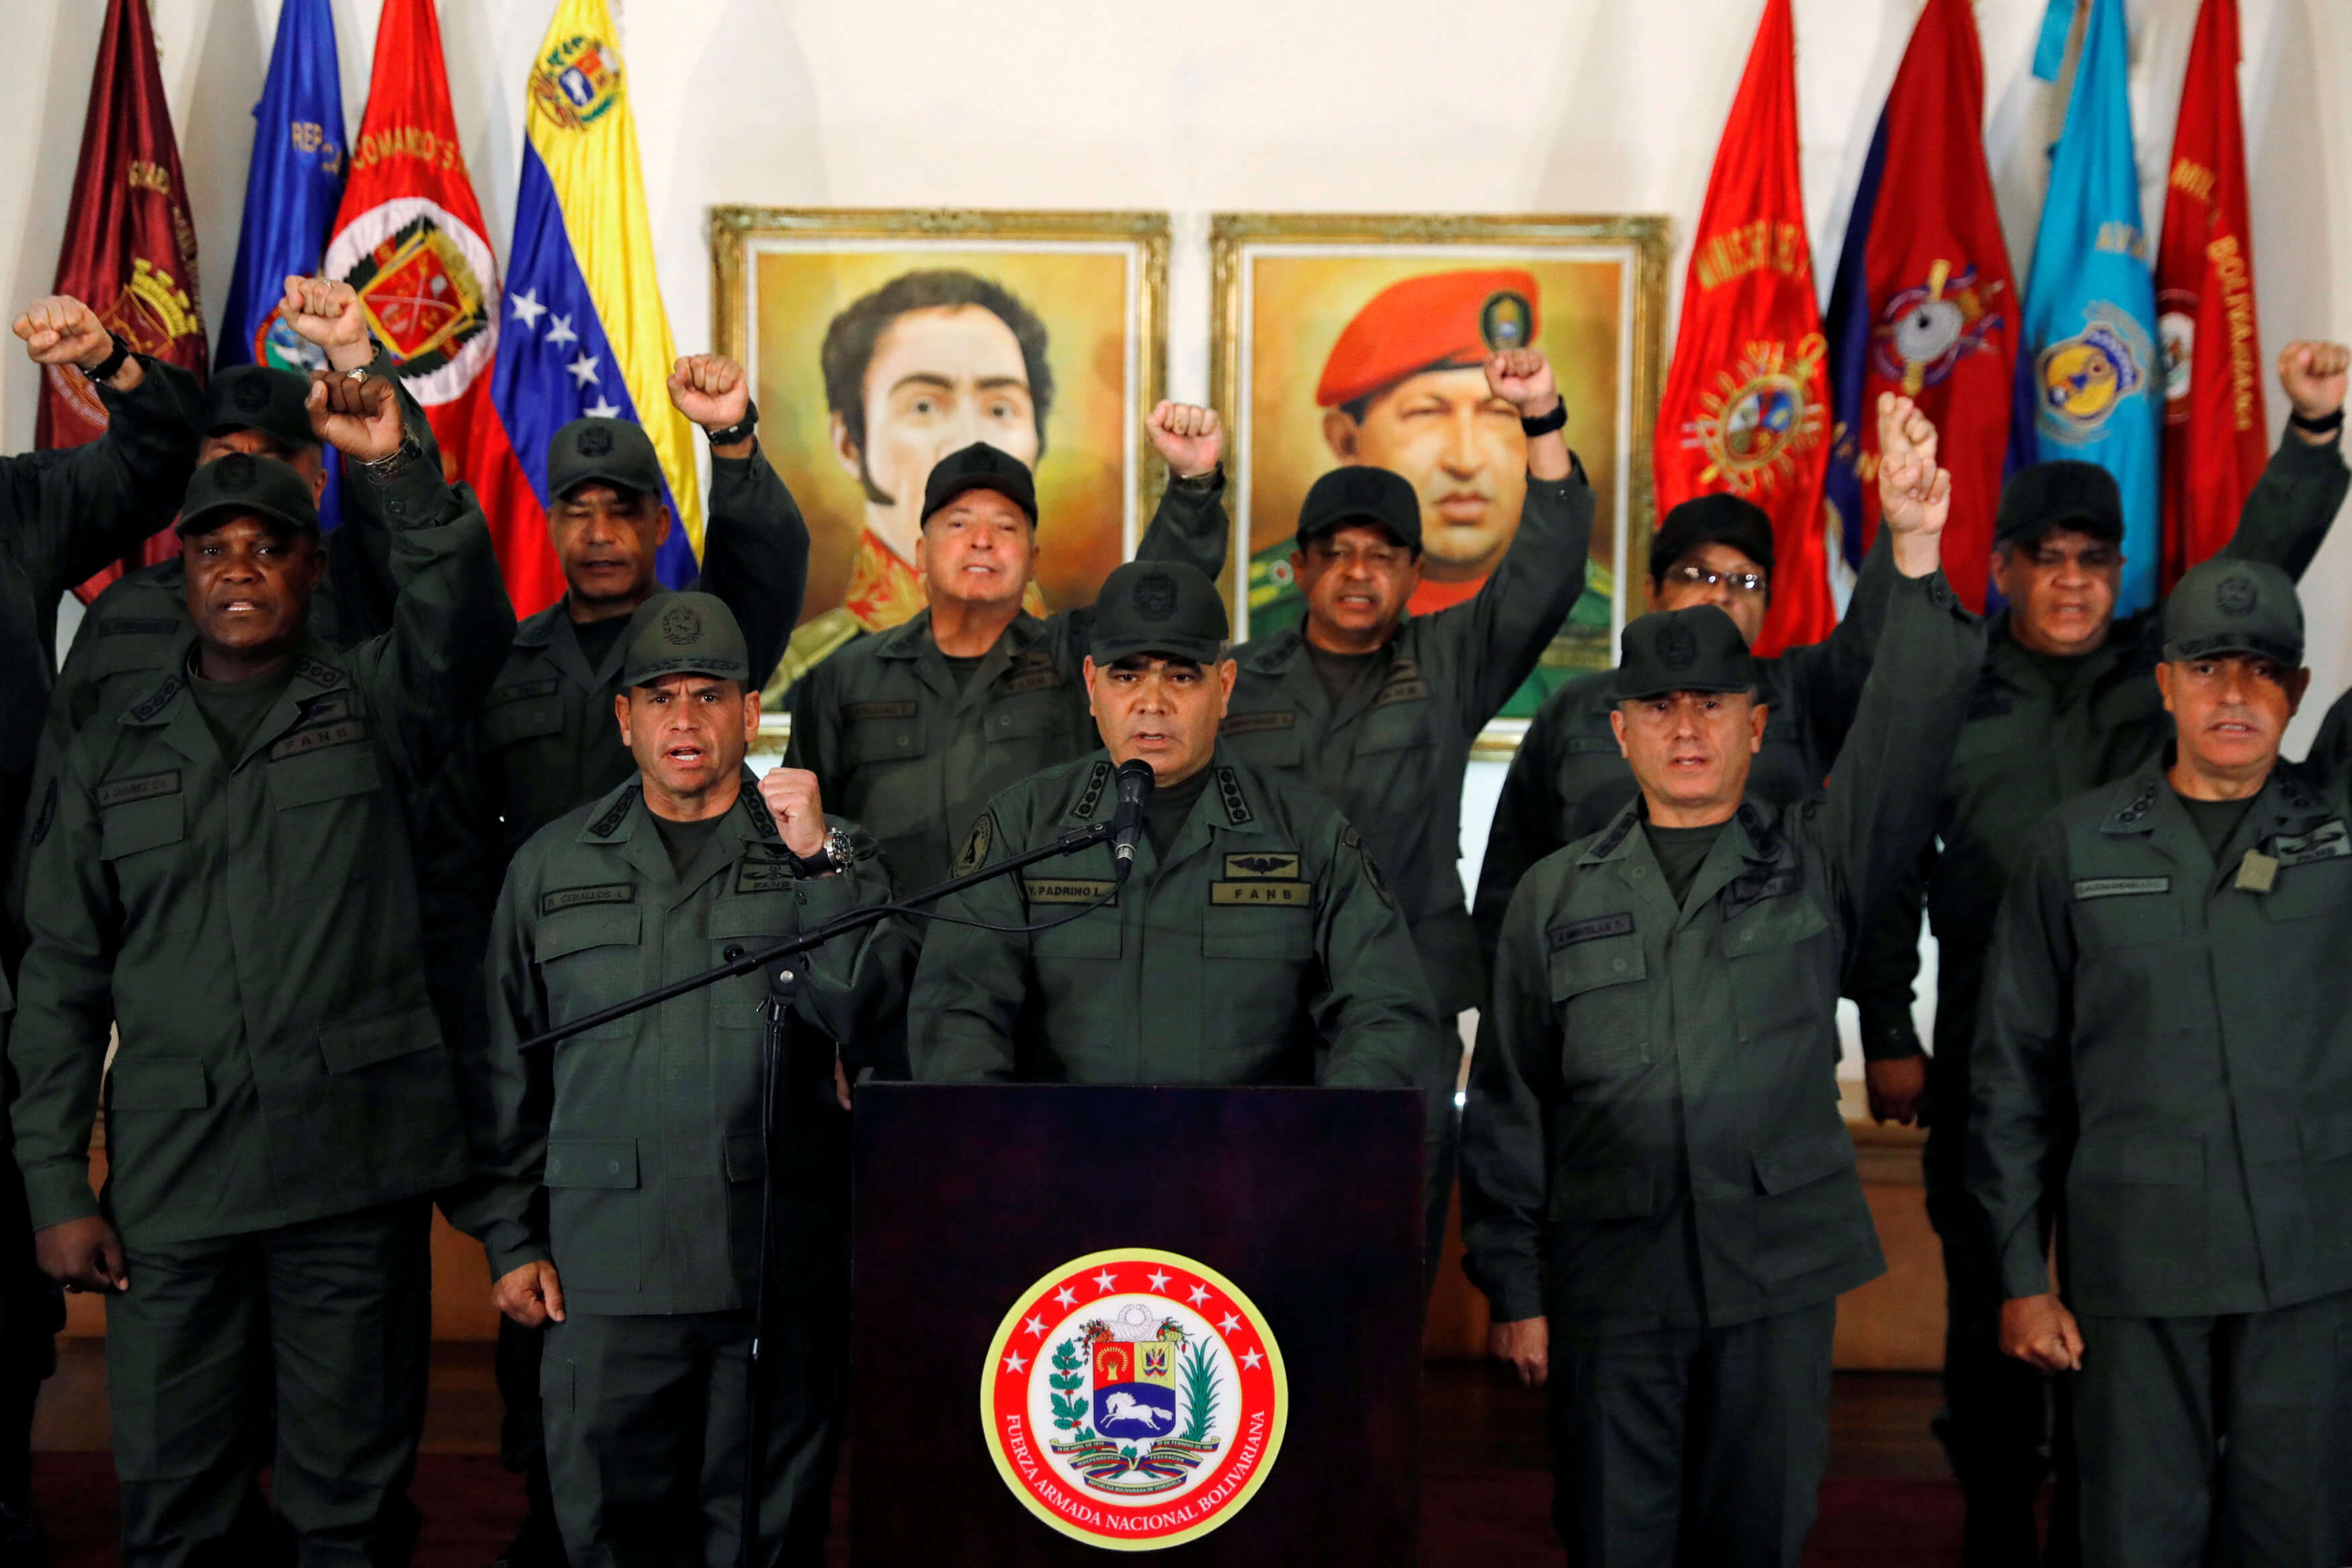 Foto: El ministro de Defensa de Venezuela, Vladimir Padrino López, asiste a una conferencia de prensa en Caracas, el 19 de febrero de 2019